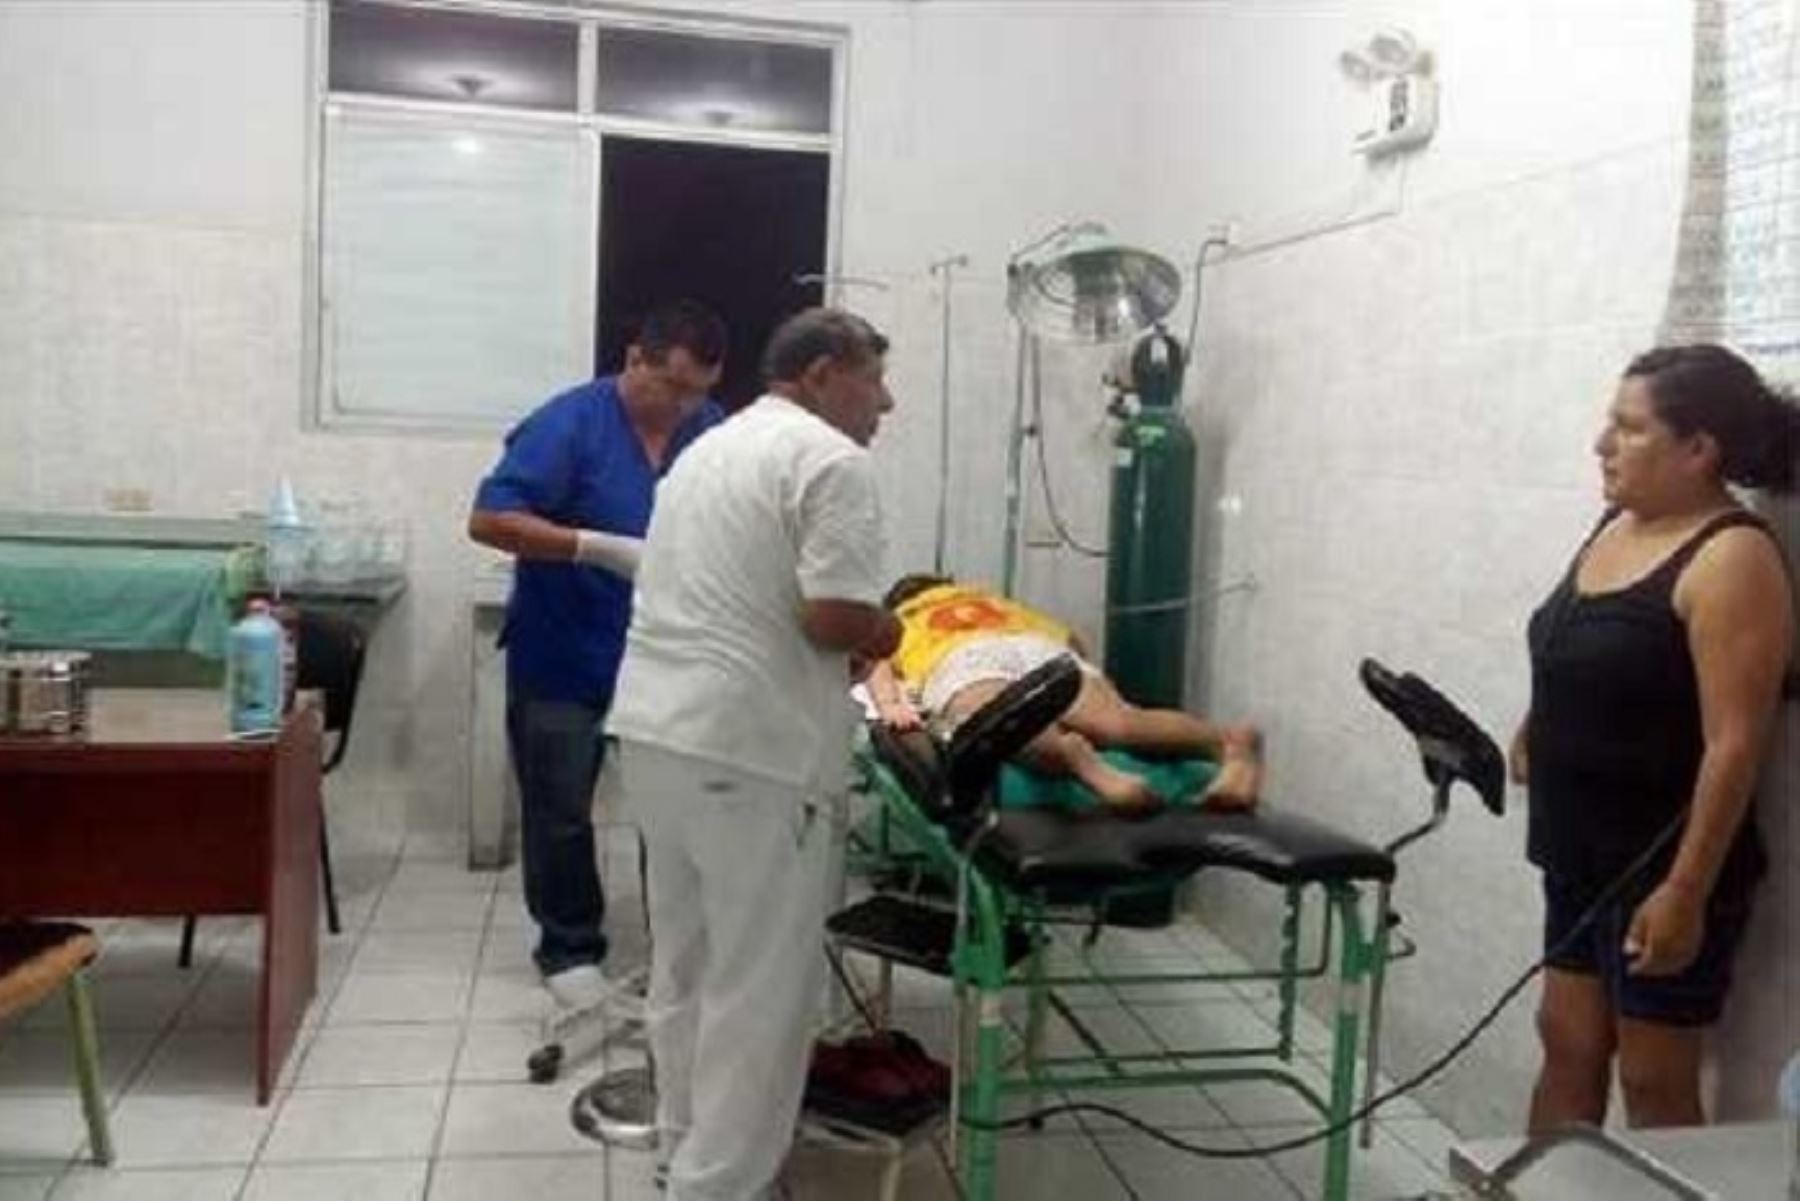 El Ministerio de Salud (Minsa), a través de la Dirección Regional de Salud (Diresa) de Ica, atendió a seis de las siete personas que resultaron heridas durante el sismo de magnitud 6 que sacudió minutos antes de la medianoche el distrito de Palpa, informó el Centro de Operaciones de Emergencia de dicho portafolio (COE Salud).